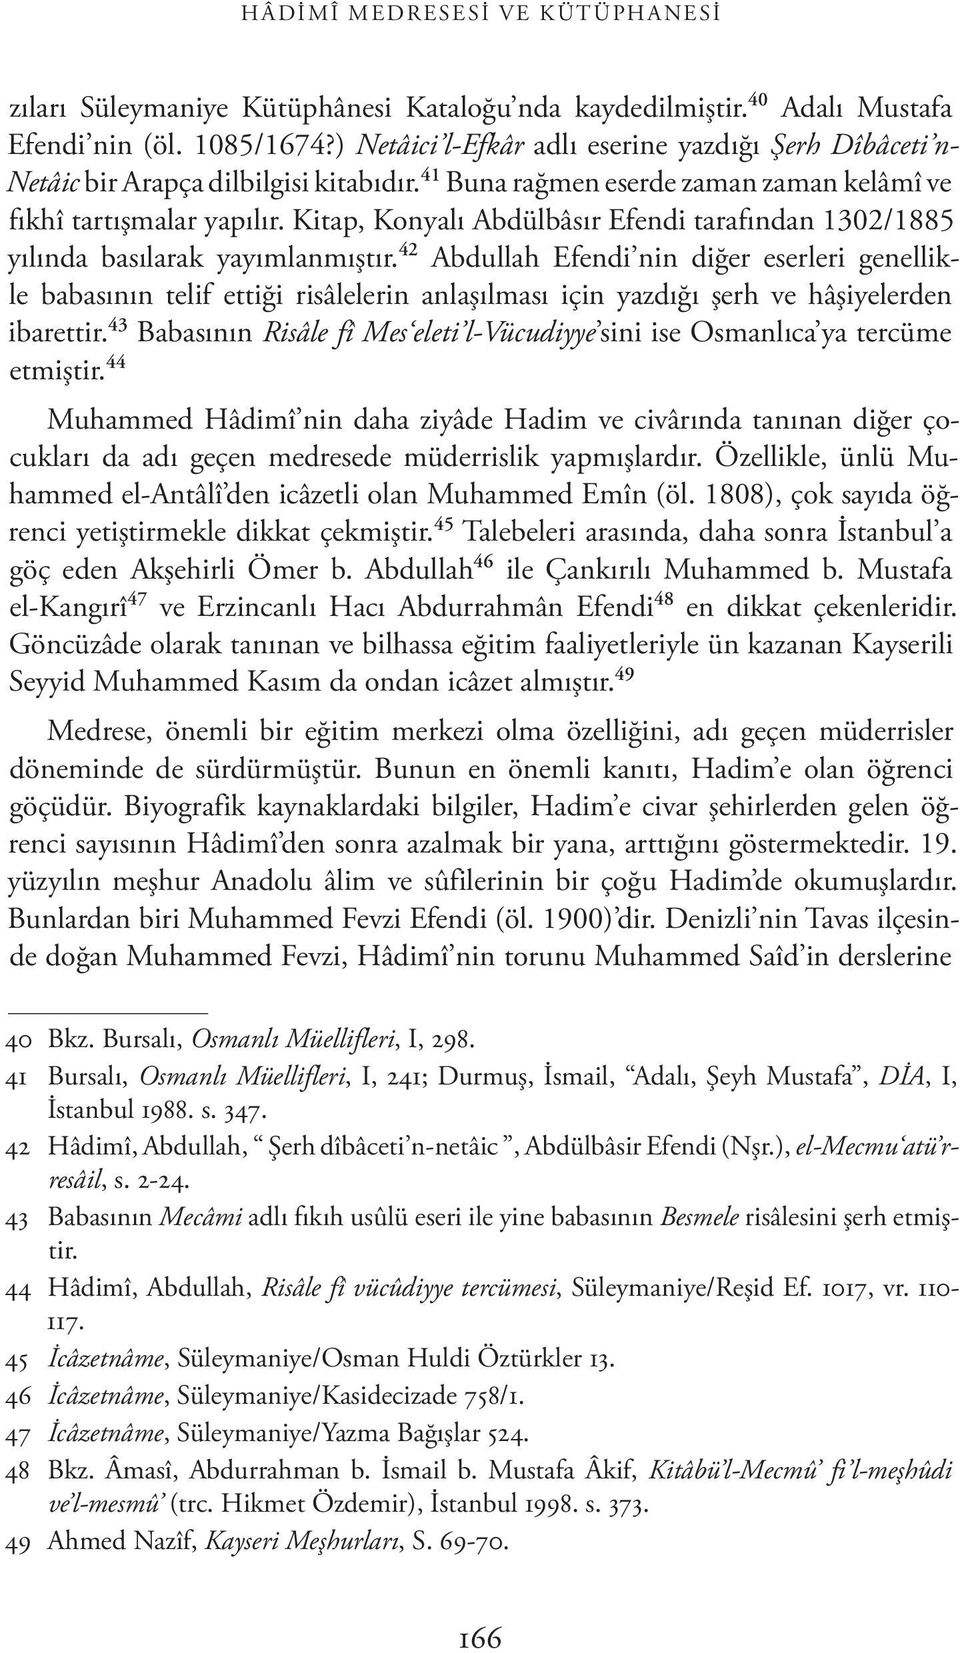 Kitap, Konyalı Abdülbâsır Efendi tarafından 1302/1885 yılında basılarak yayımlanmıştır.